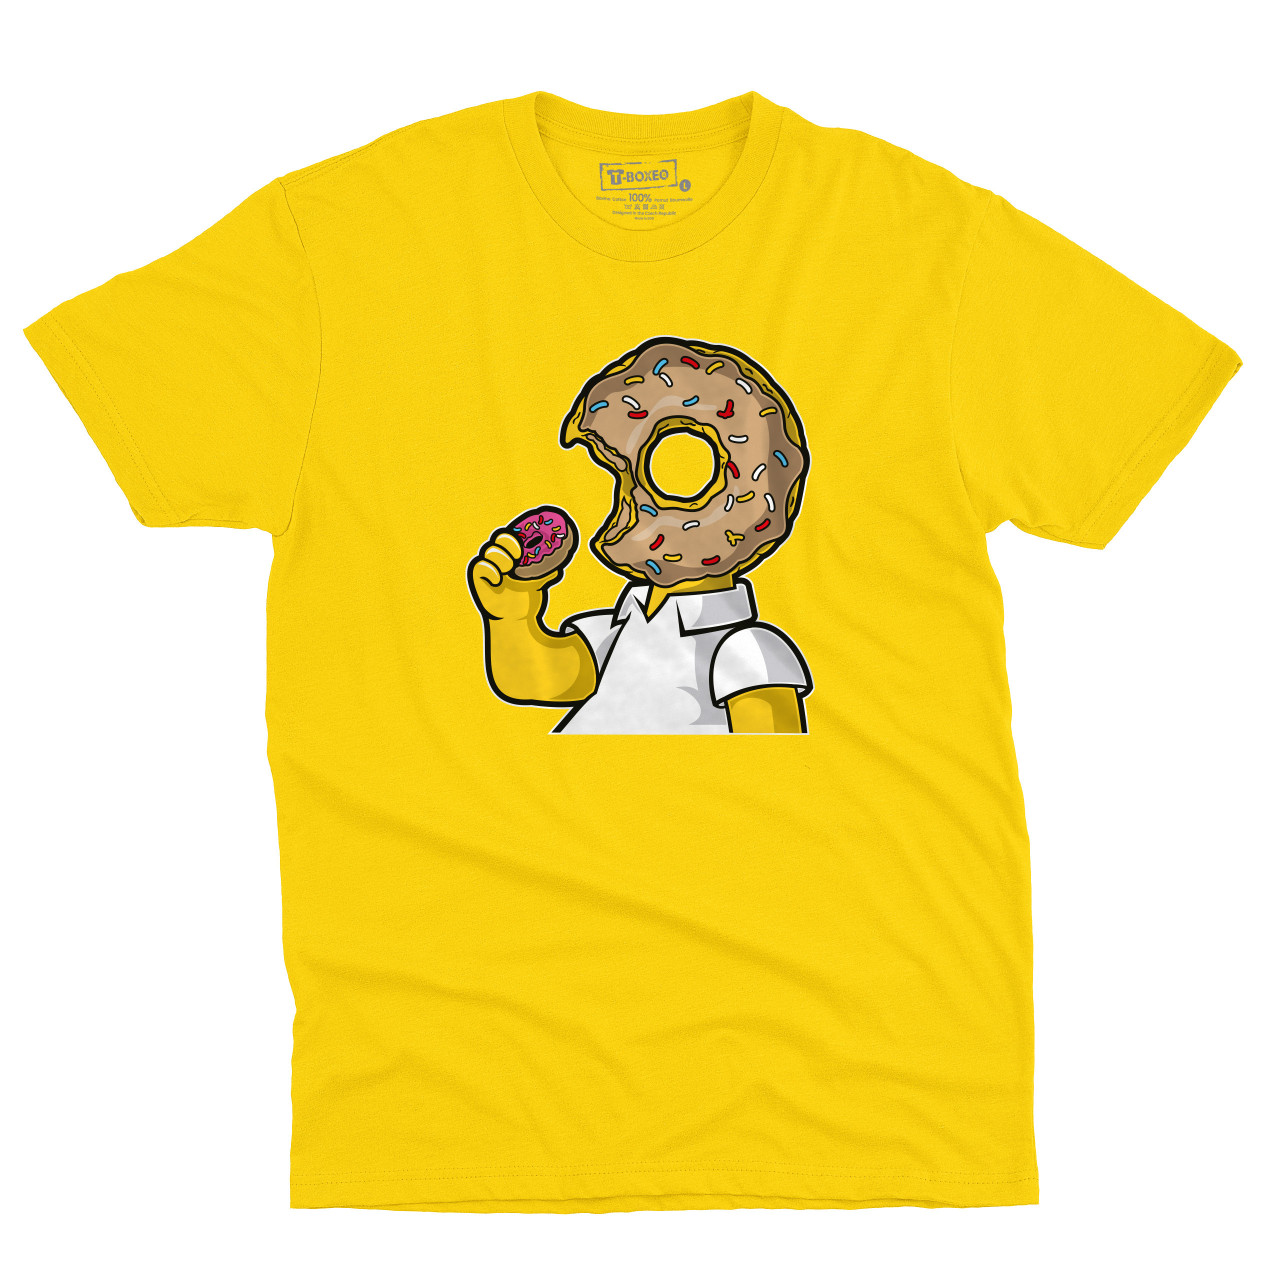 Pánské tričko s potiskem “Homer s koblihovou hlavou”